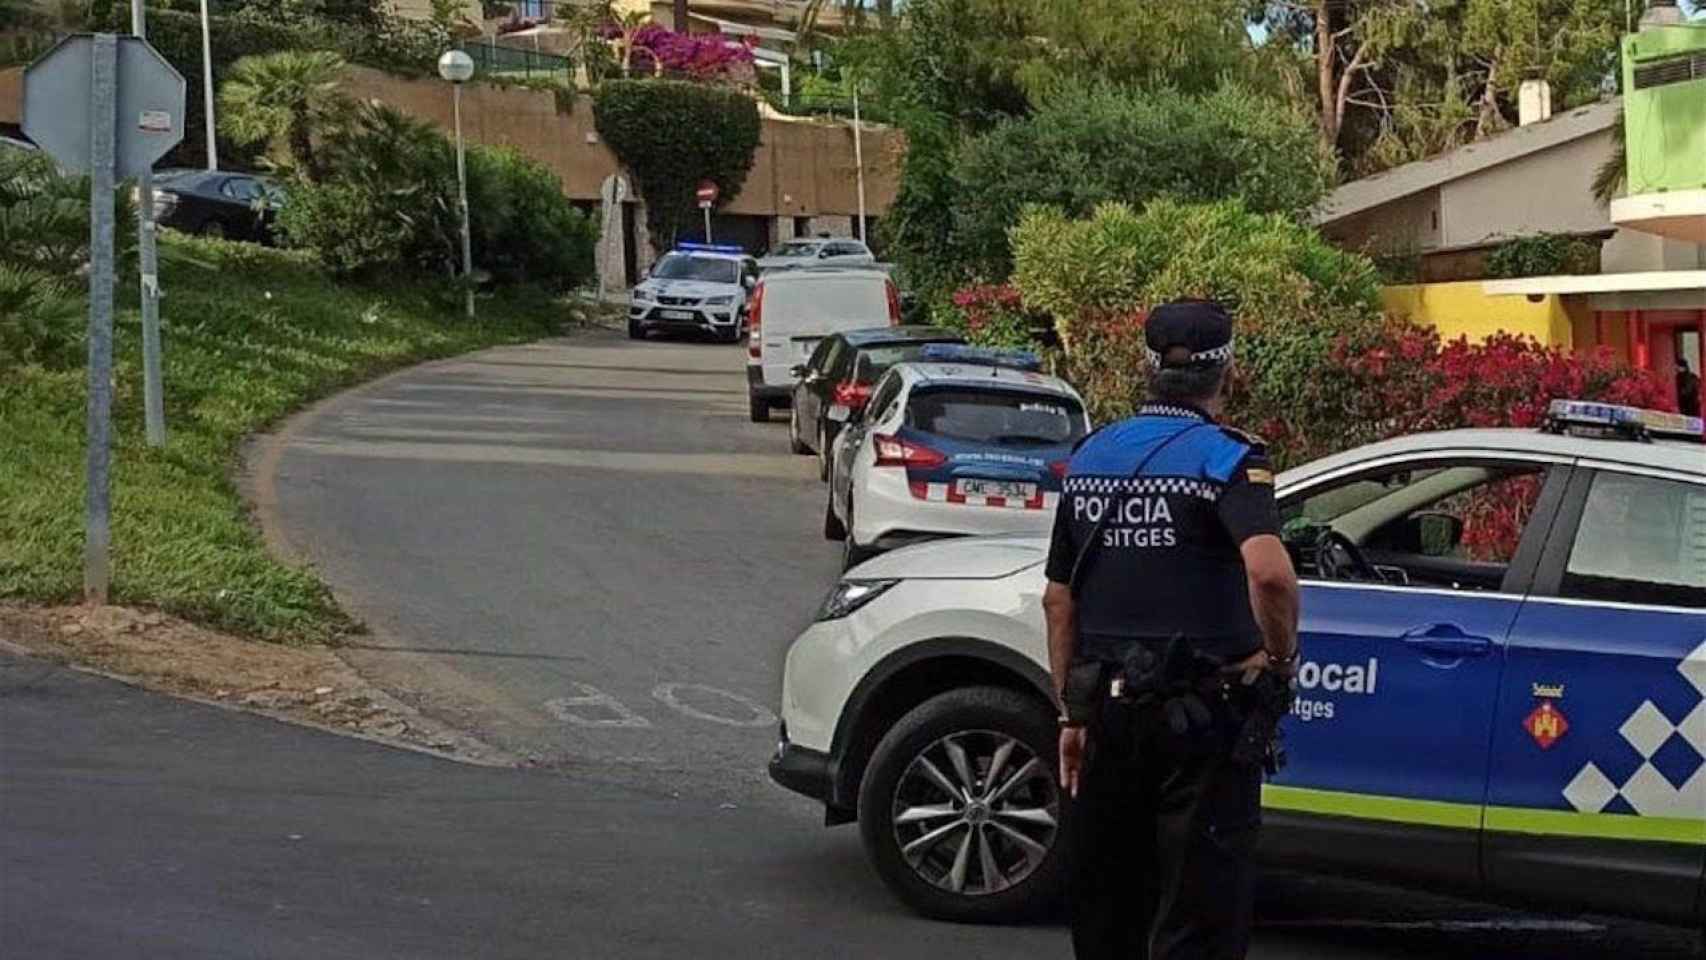 Policía Local de Sitges, en Vallpineda, durante la verbena / AYUNTAMIENTO DE SITGES